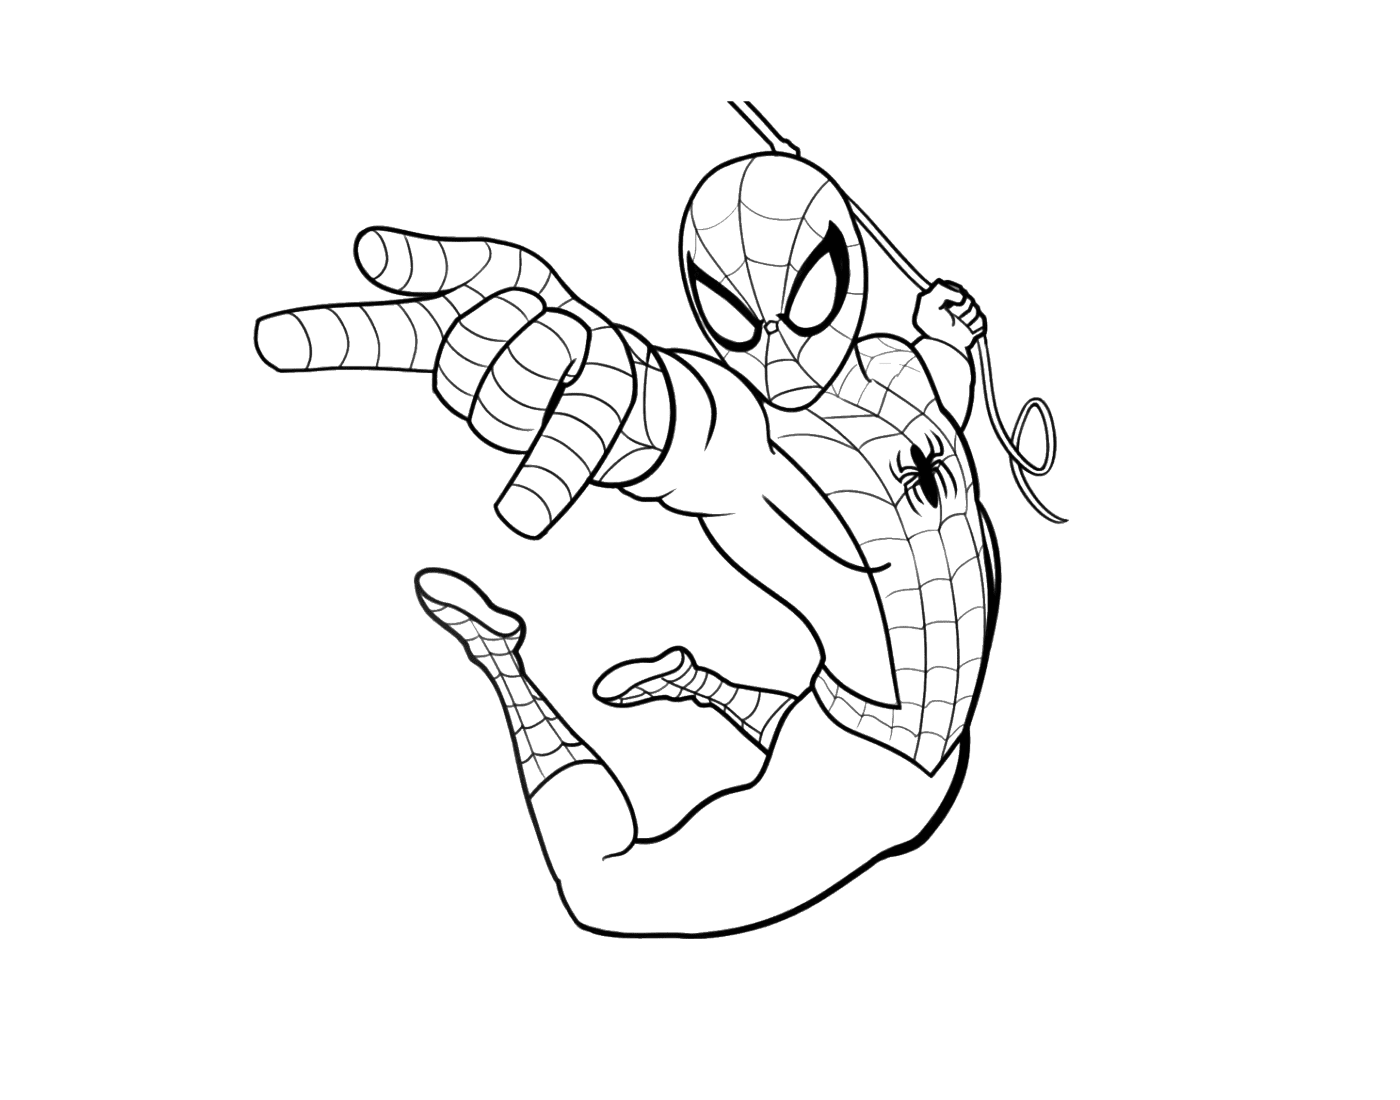  Spider-Man springt in die Luft 